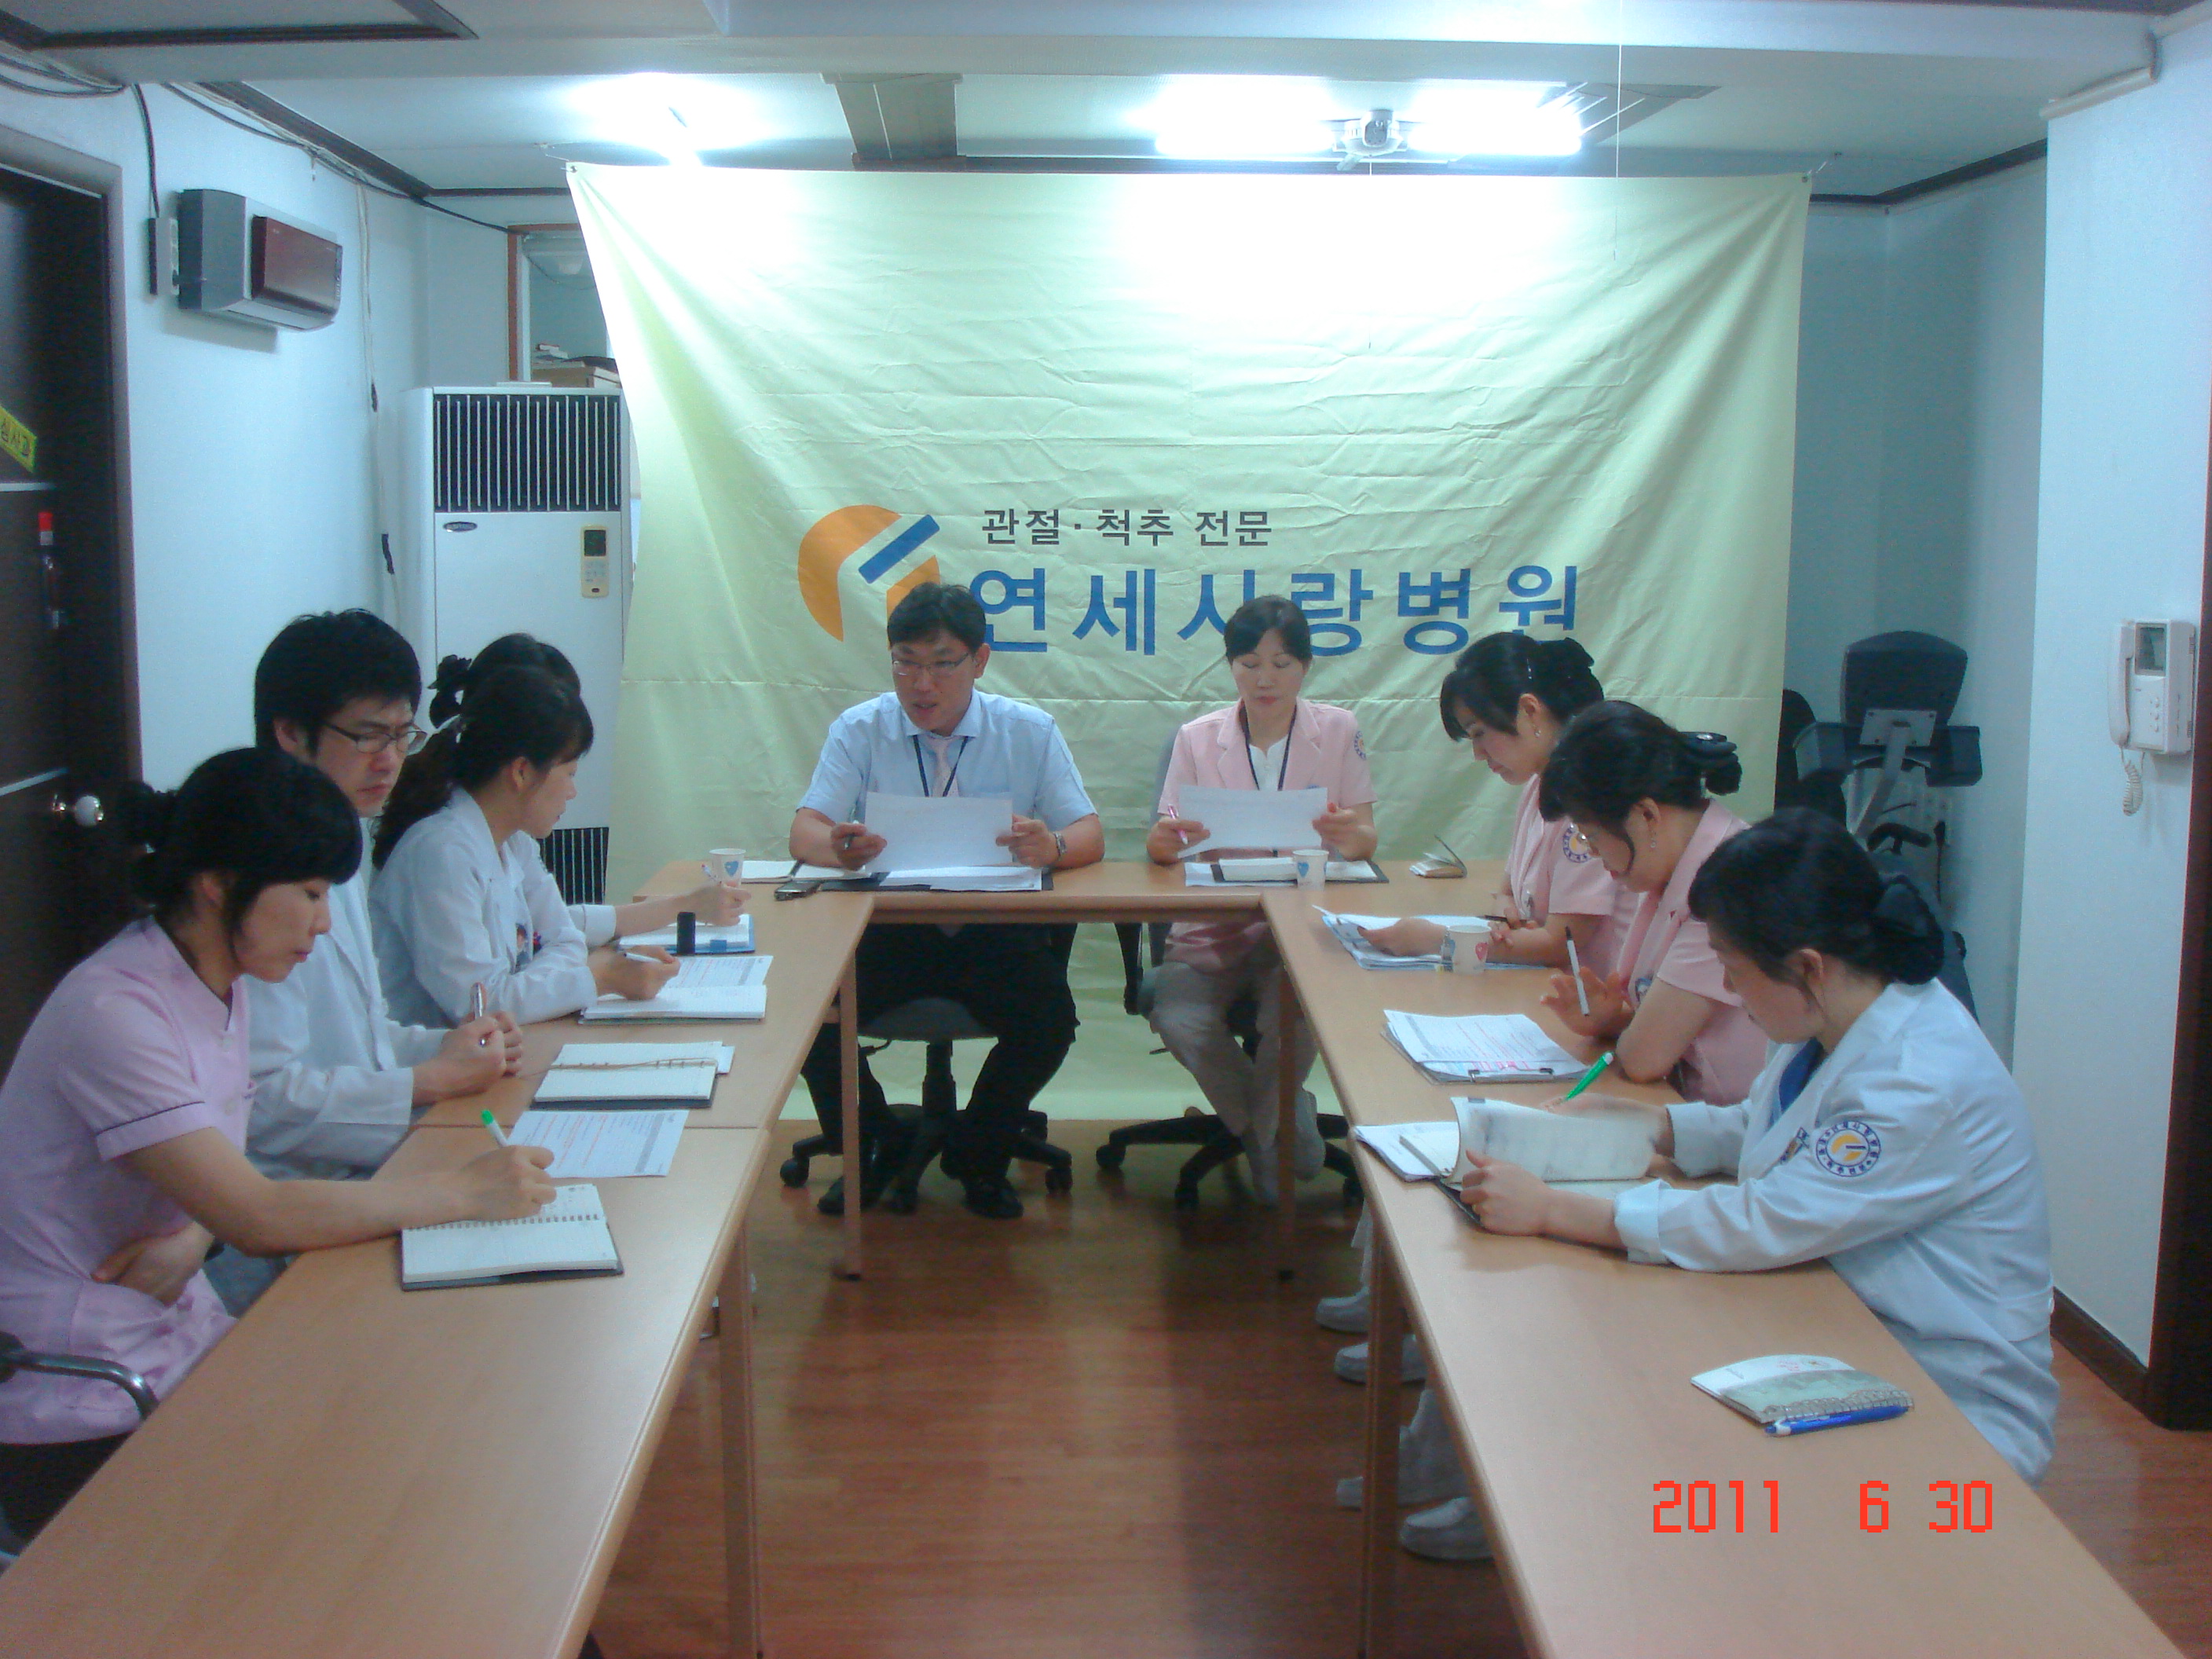 [강북점] 2011년 6월 30일 - 실무진 회의 개최 게시글의 1번째 첨부파일입니다.